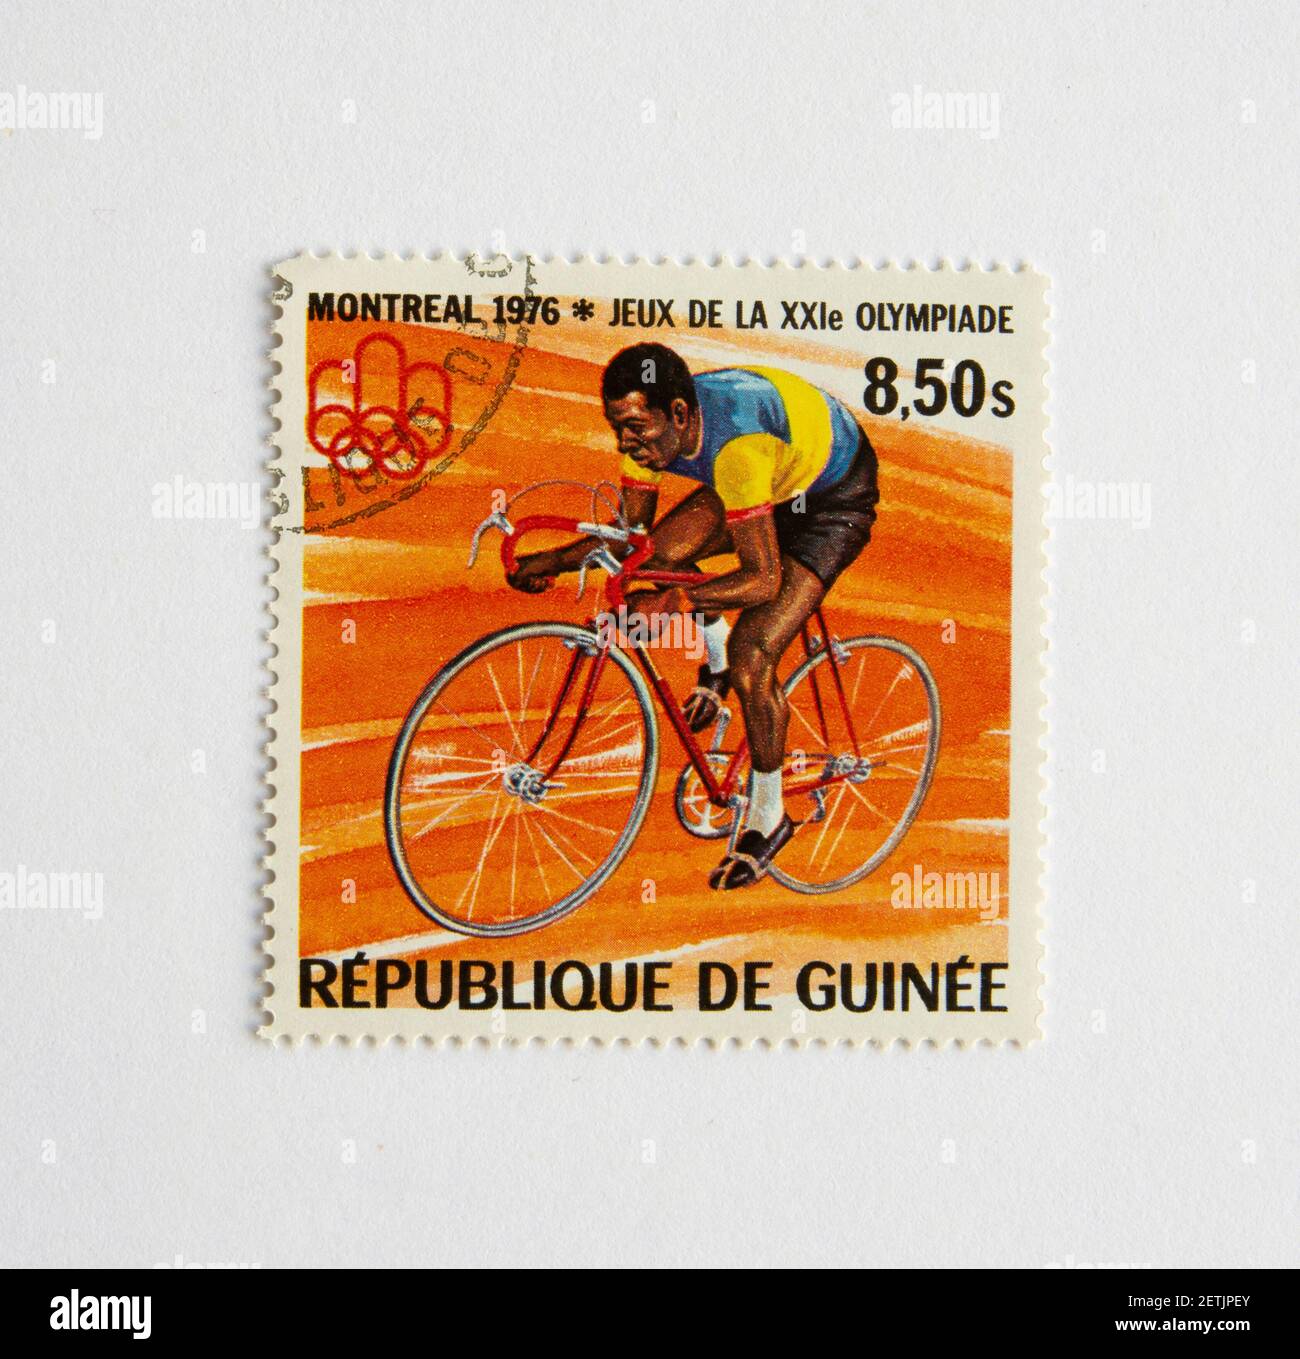 01.03.2021 Istanbul Turchia. Repubblica di Guinea francobollo. Circa 1976. Montreal 1976 Olimpiadi estive. bicicletta, corsa in bicicletta Foto Stock